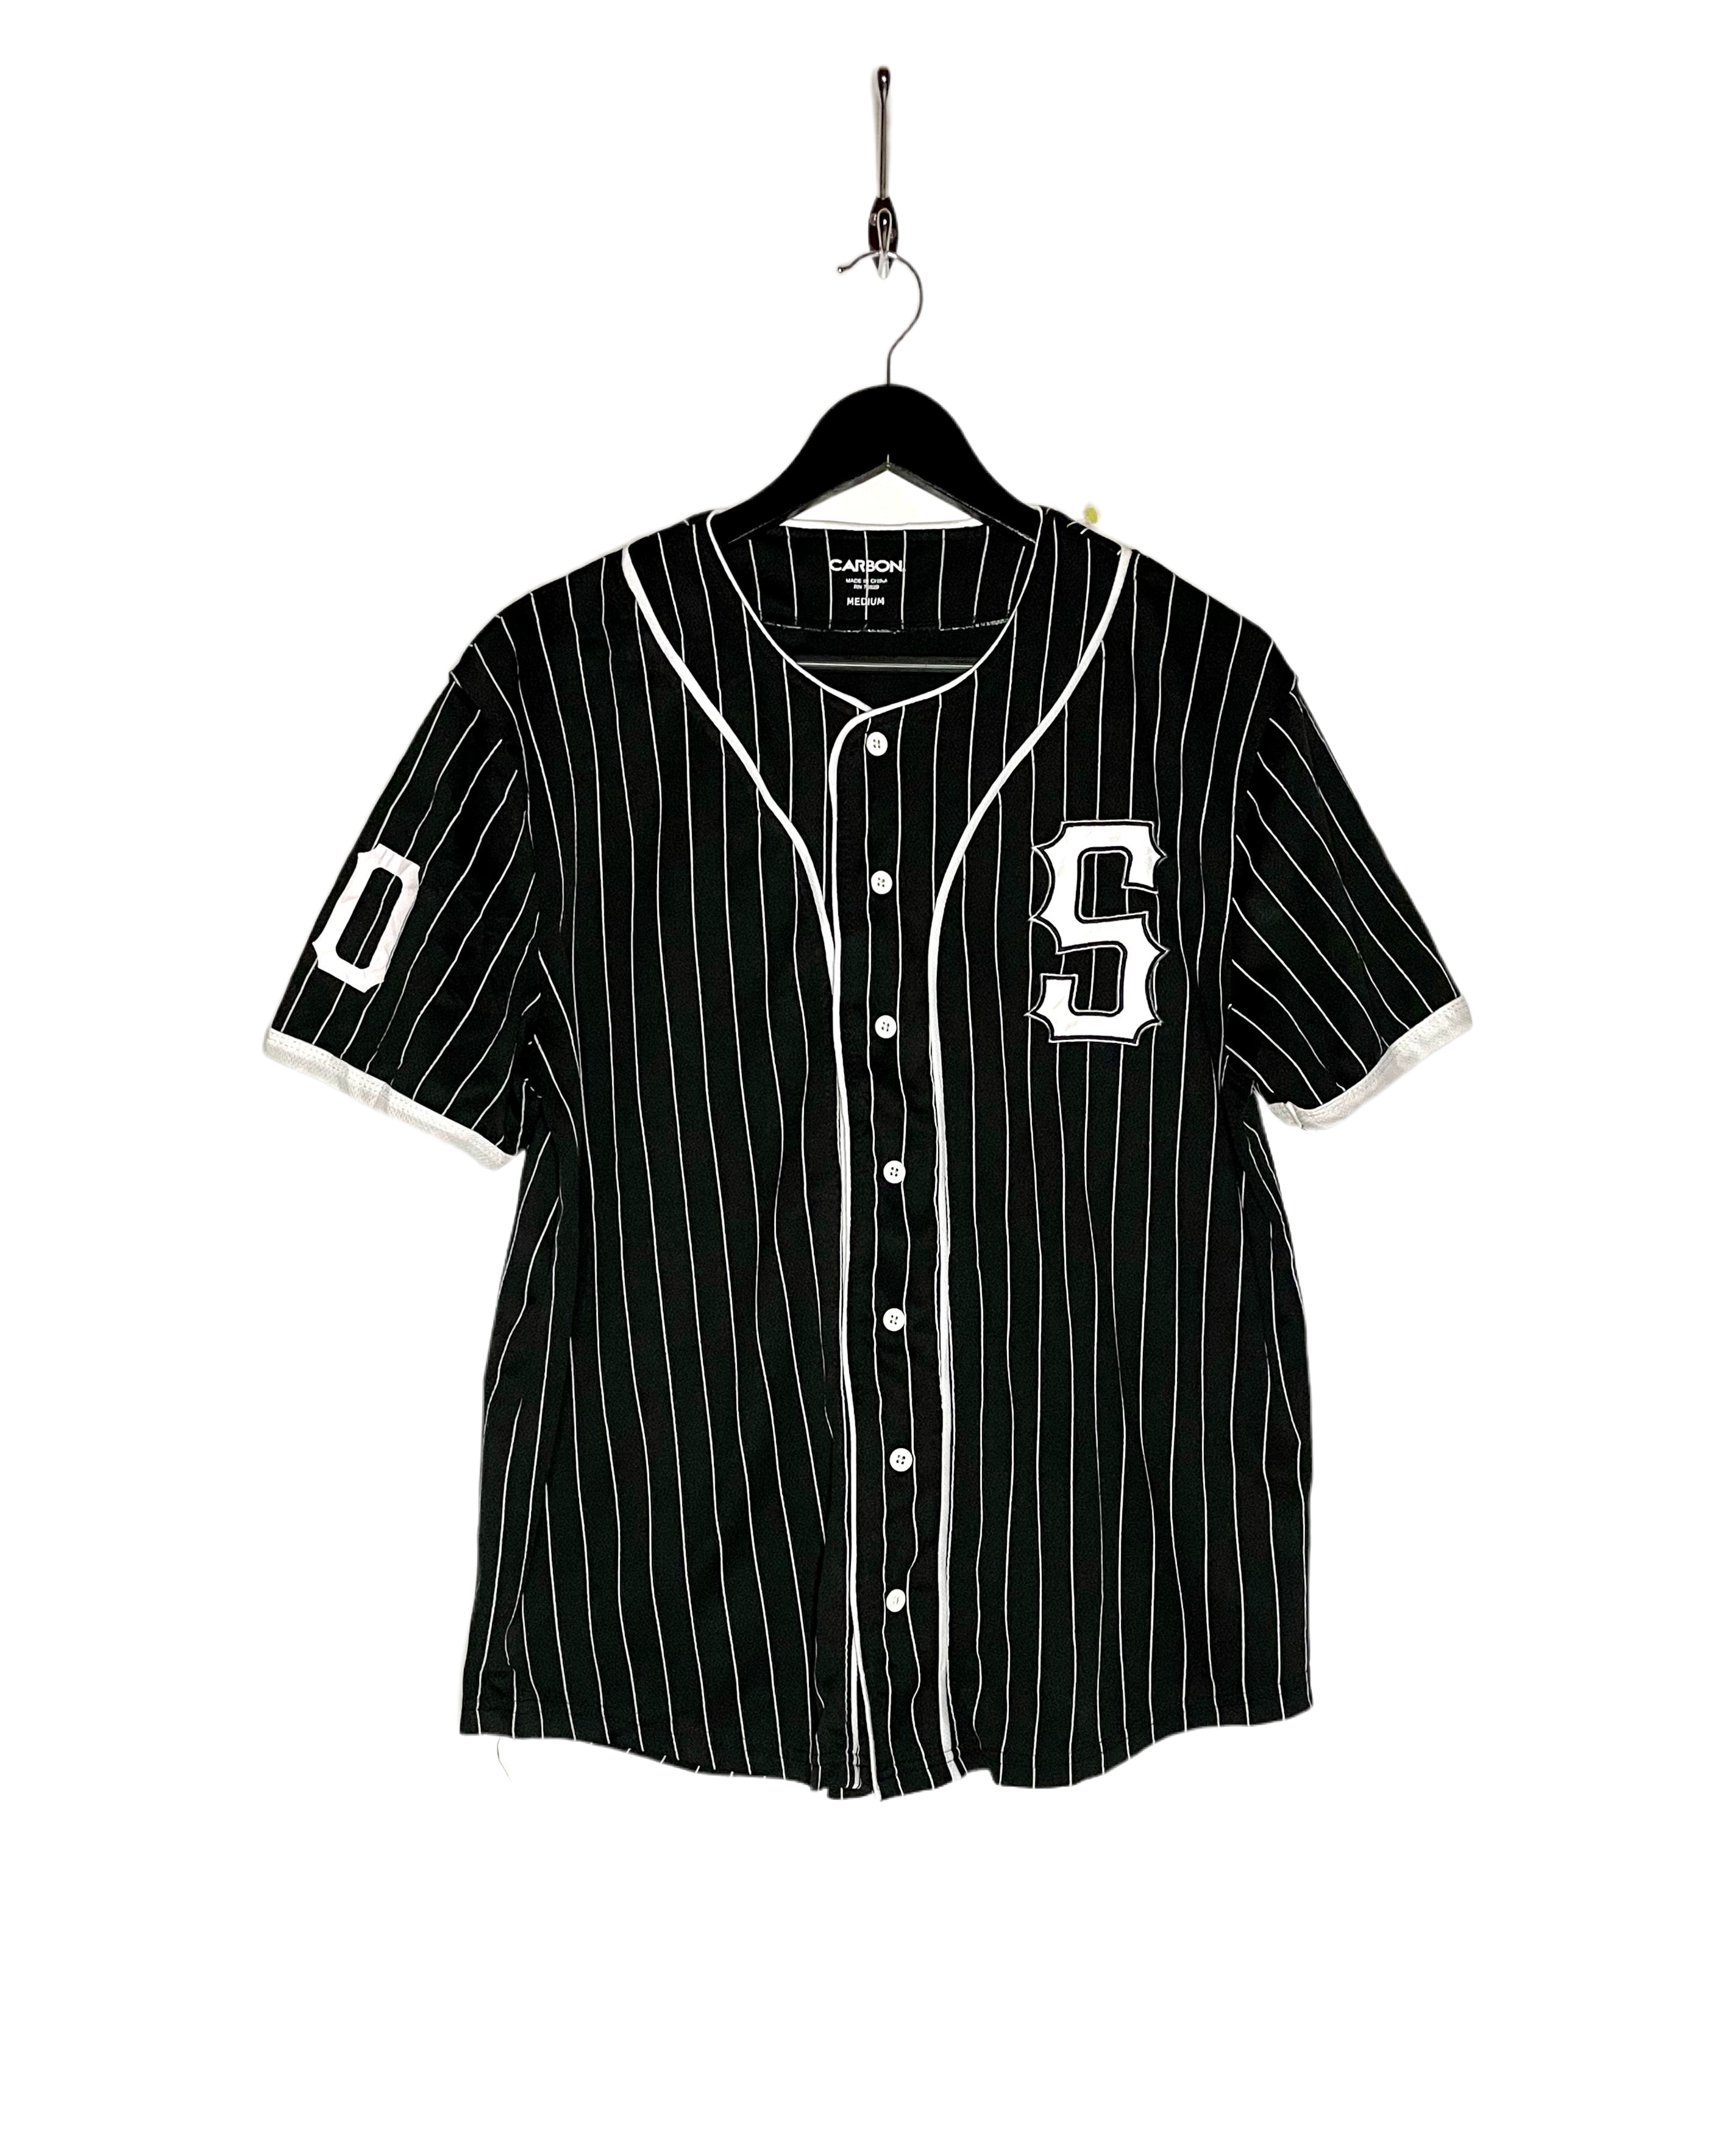 Carbon Baseball Jersey #00 Savage Schwarz/Weiß Größe M